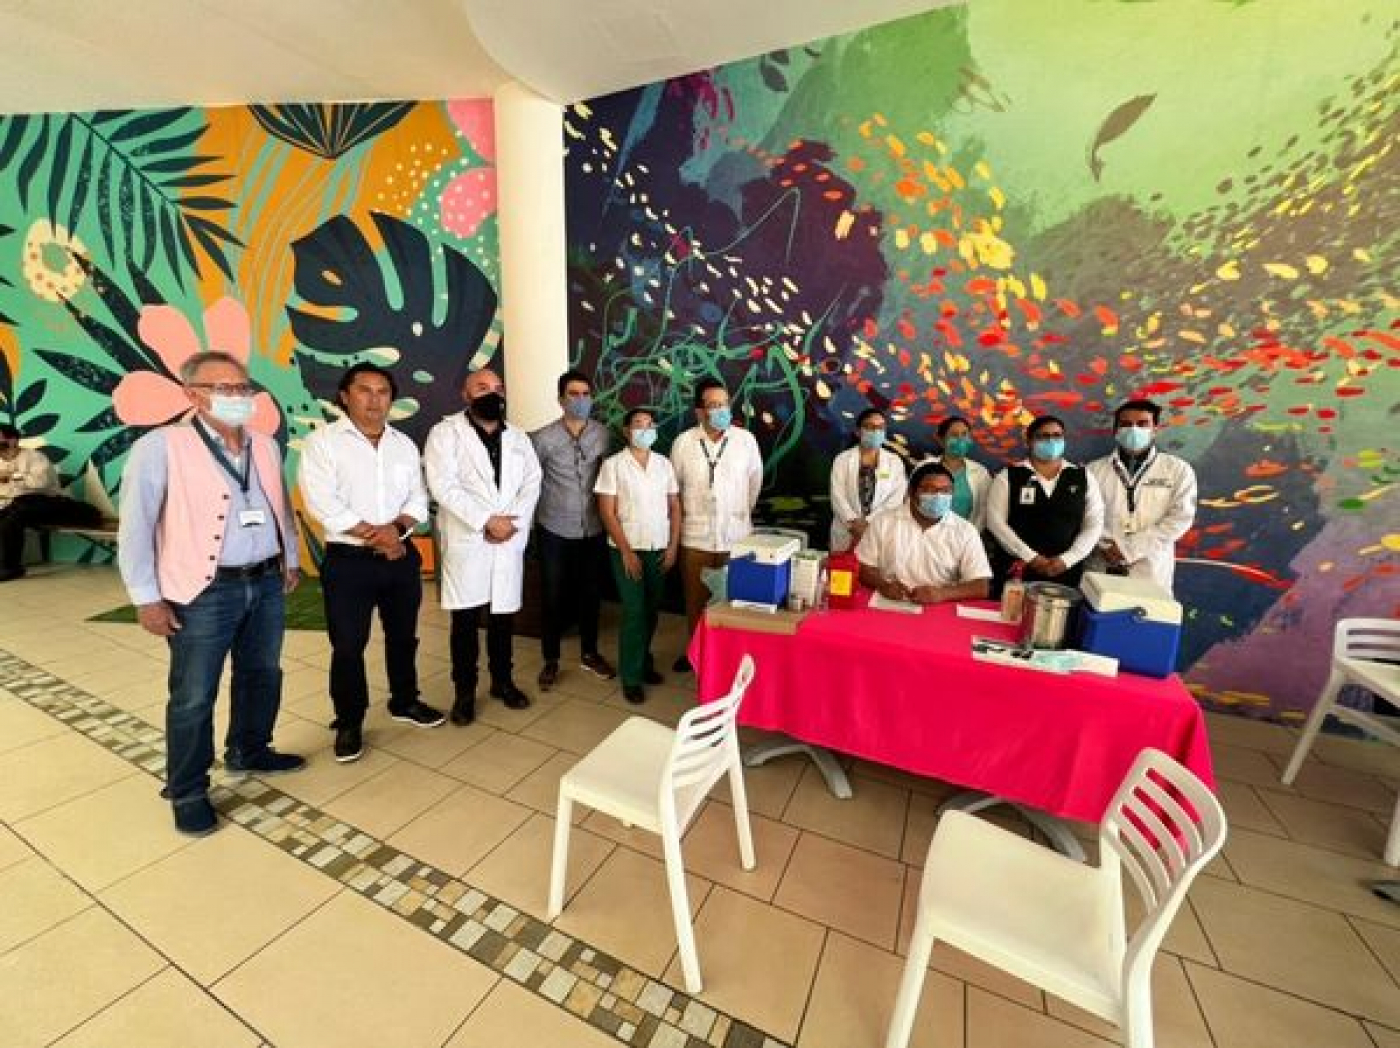 Se refuerza la vacunación contra Covid-19 en el sector turístico de Quintana Roo